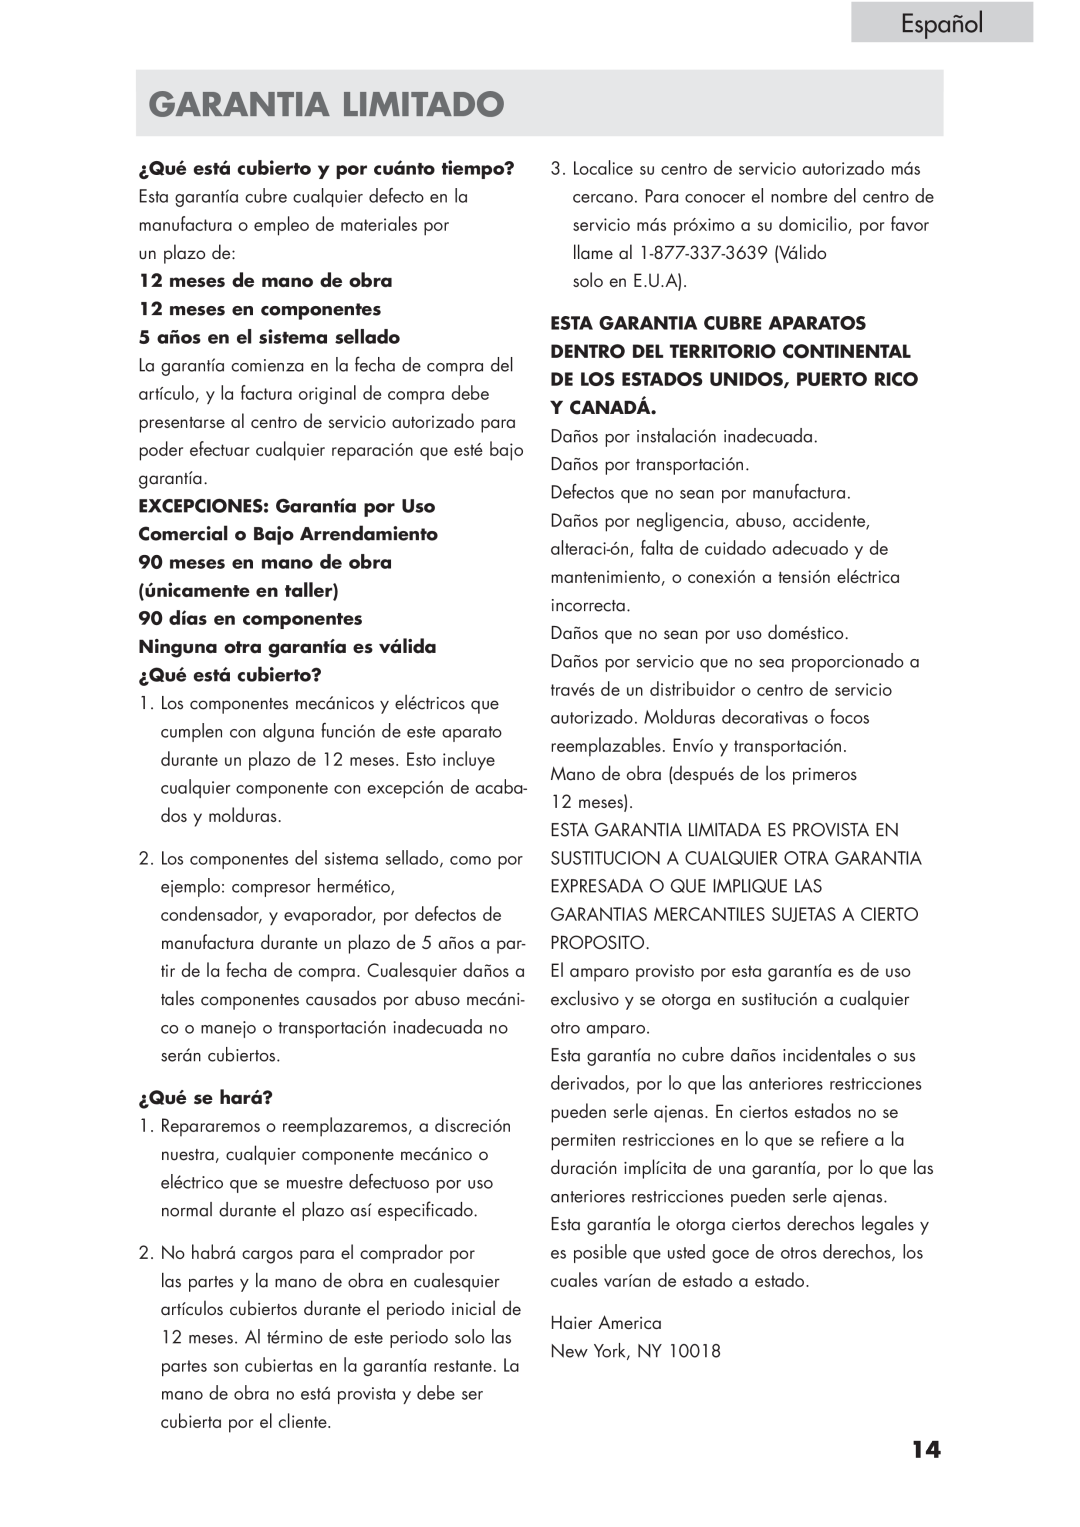 Haier HVCE15, HVCE24 Garantia Limitado, Español, ¿Qué está cubierto y por cuánto tiempo?, 5 años en el sistema sellado 